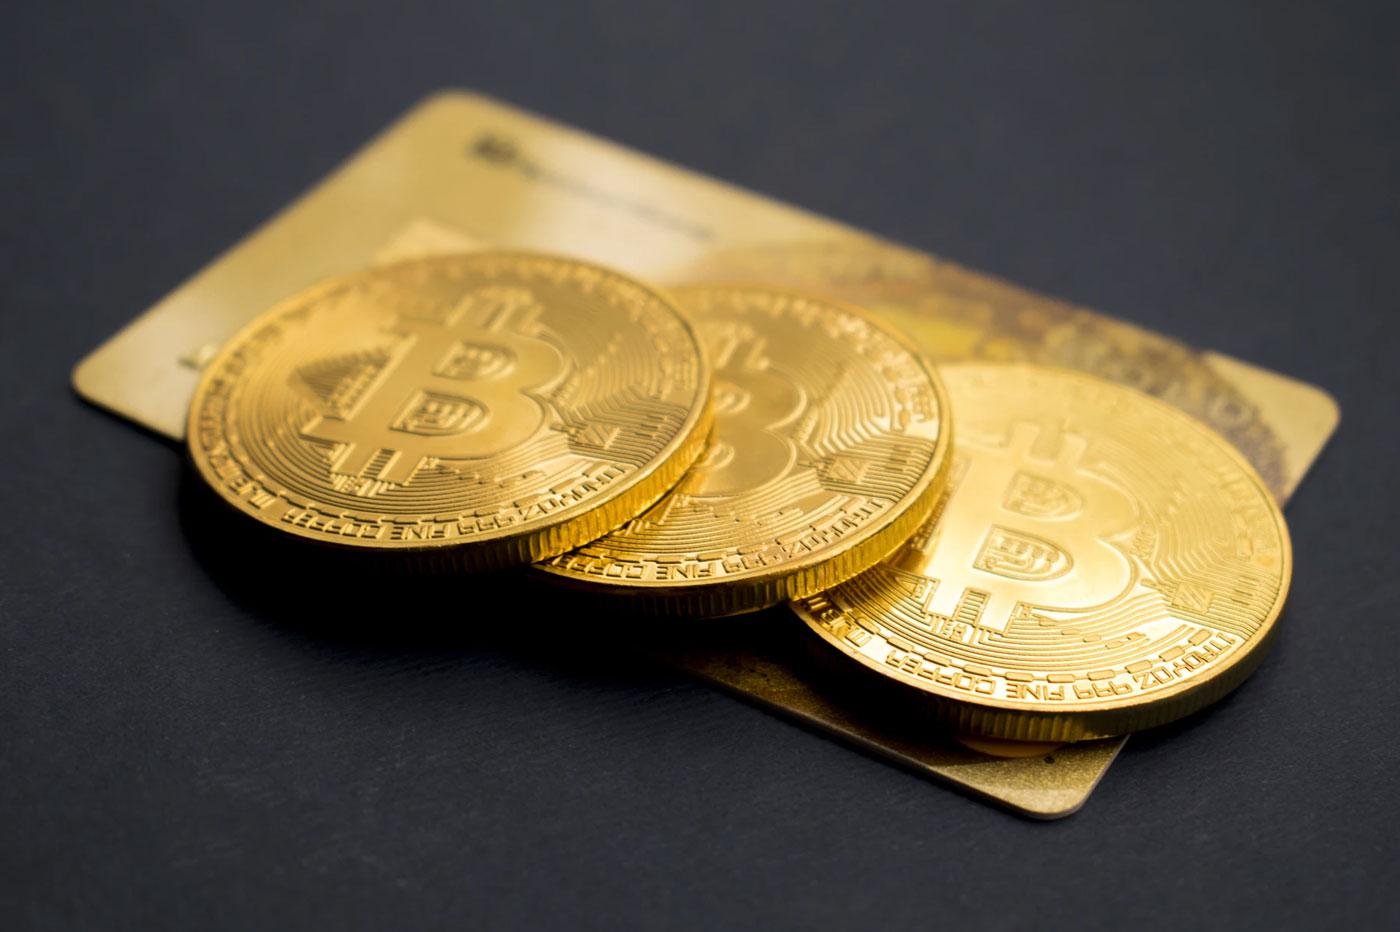 Preț Bitcoin (BTC) – cât costă un Bitcoin azi